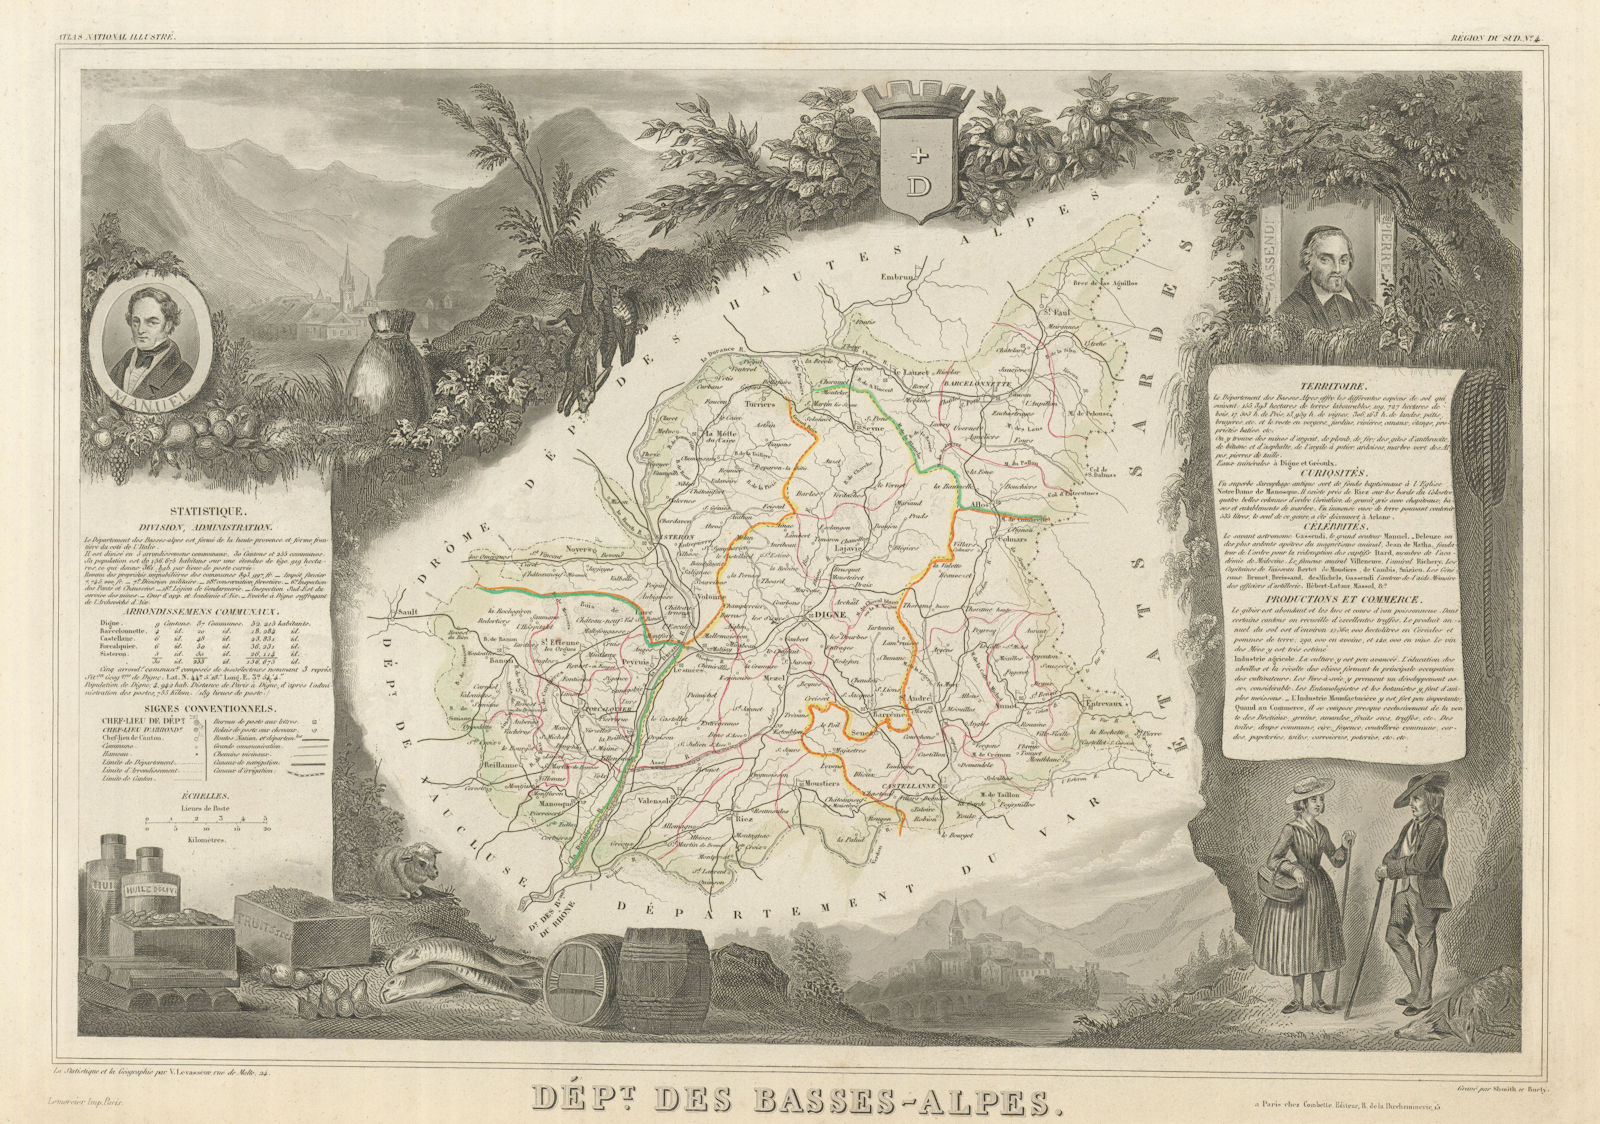 Département des BASSES-ALPES. Alpes-de-Haute-Provence. LEVASSEUR 1856 old map